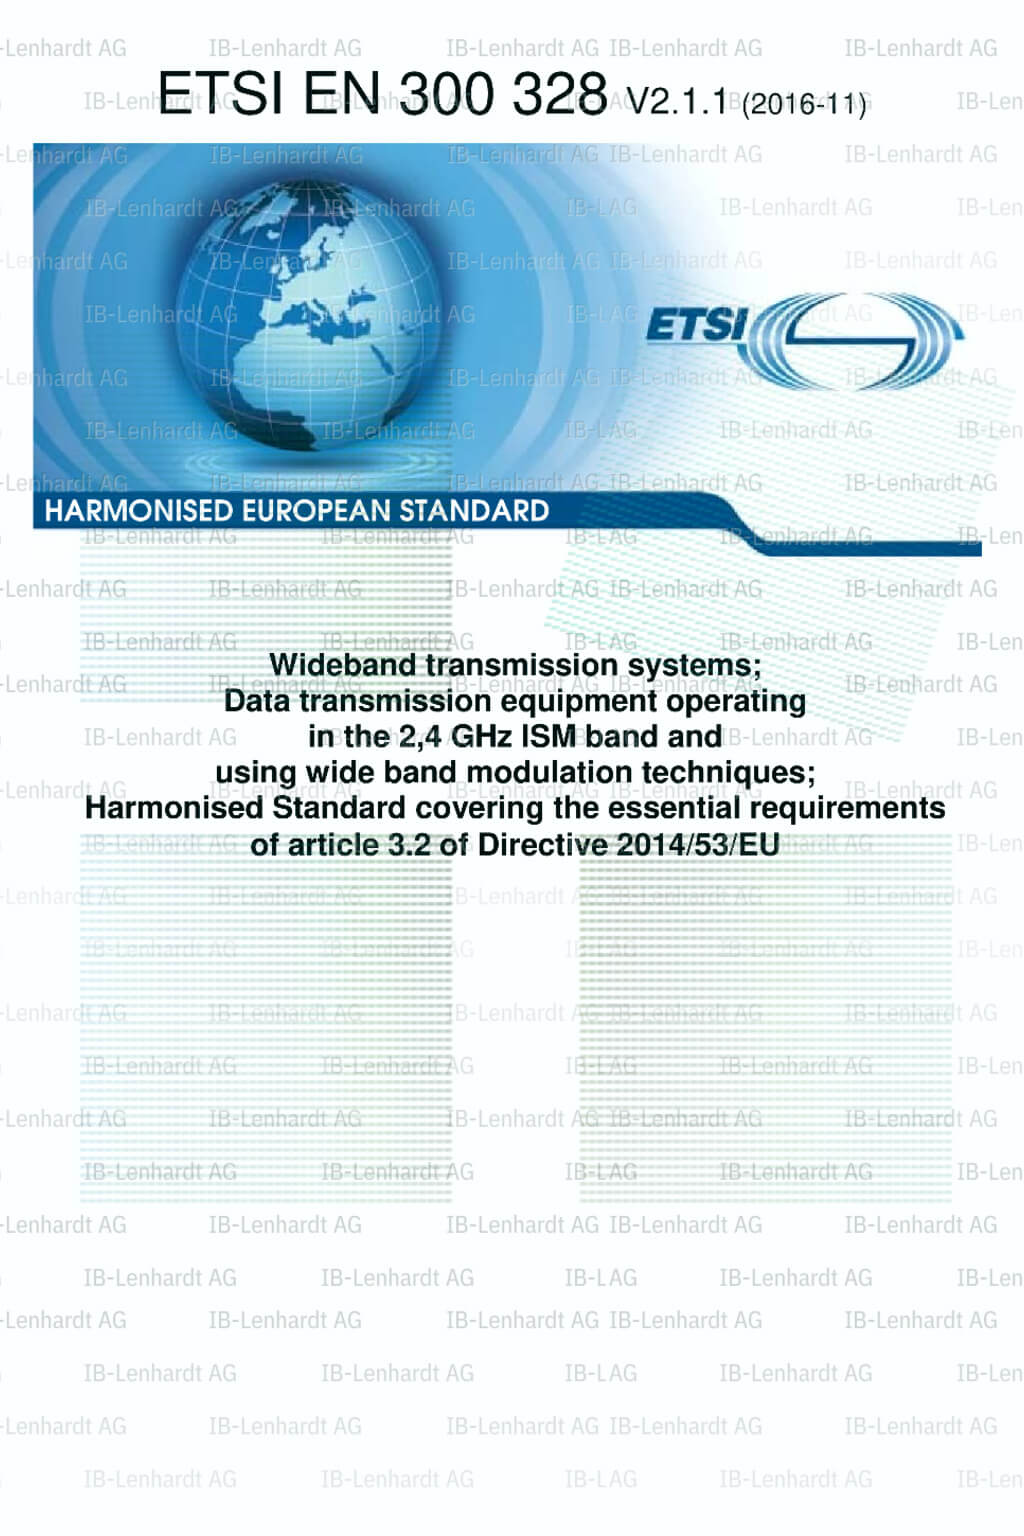 ETSI EN 300 328 V2.1.1